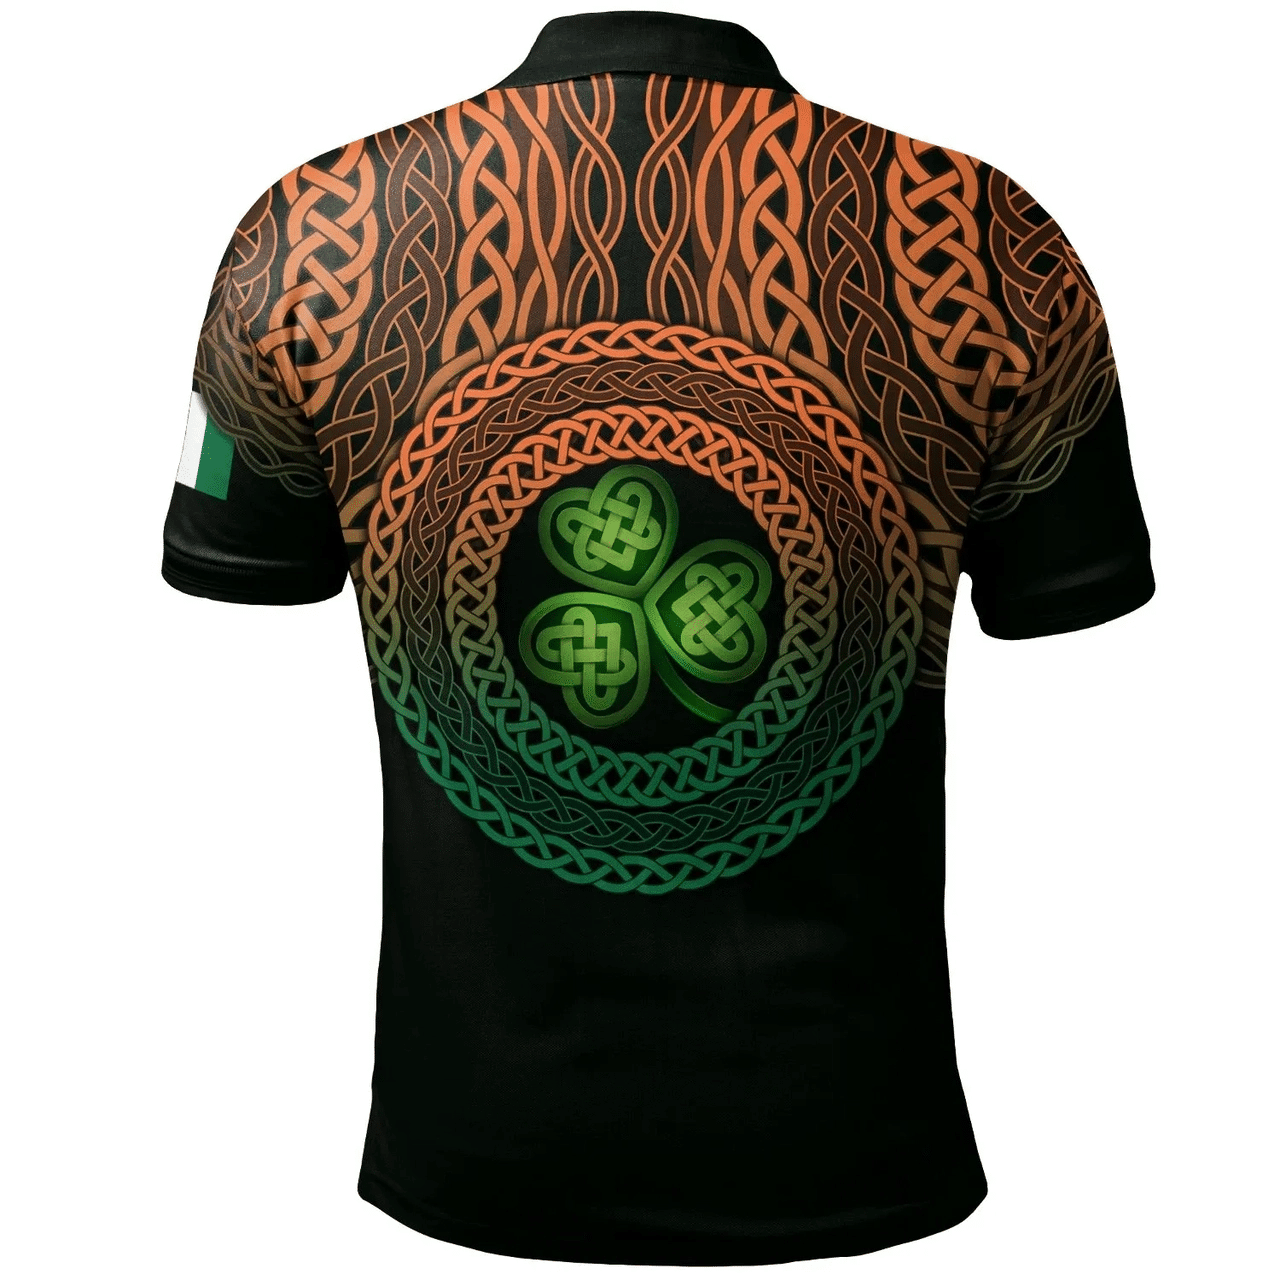 1stIreland Ireland Polo Shirt - McQuay or MacQuay Irish Family Crest Polo Shirt - Celtic Pride A7 | 1stIreland.com